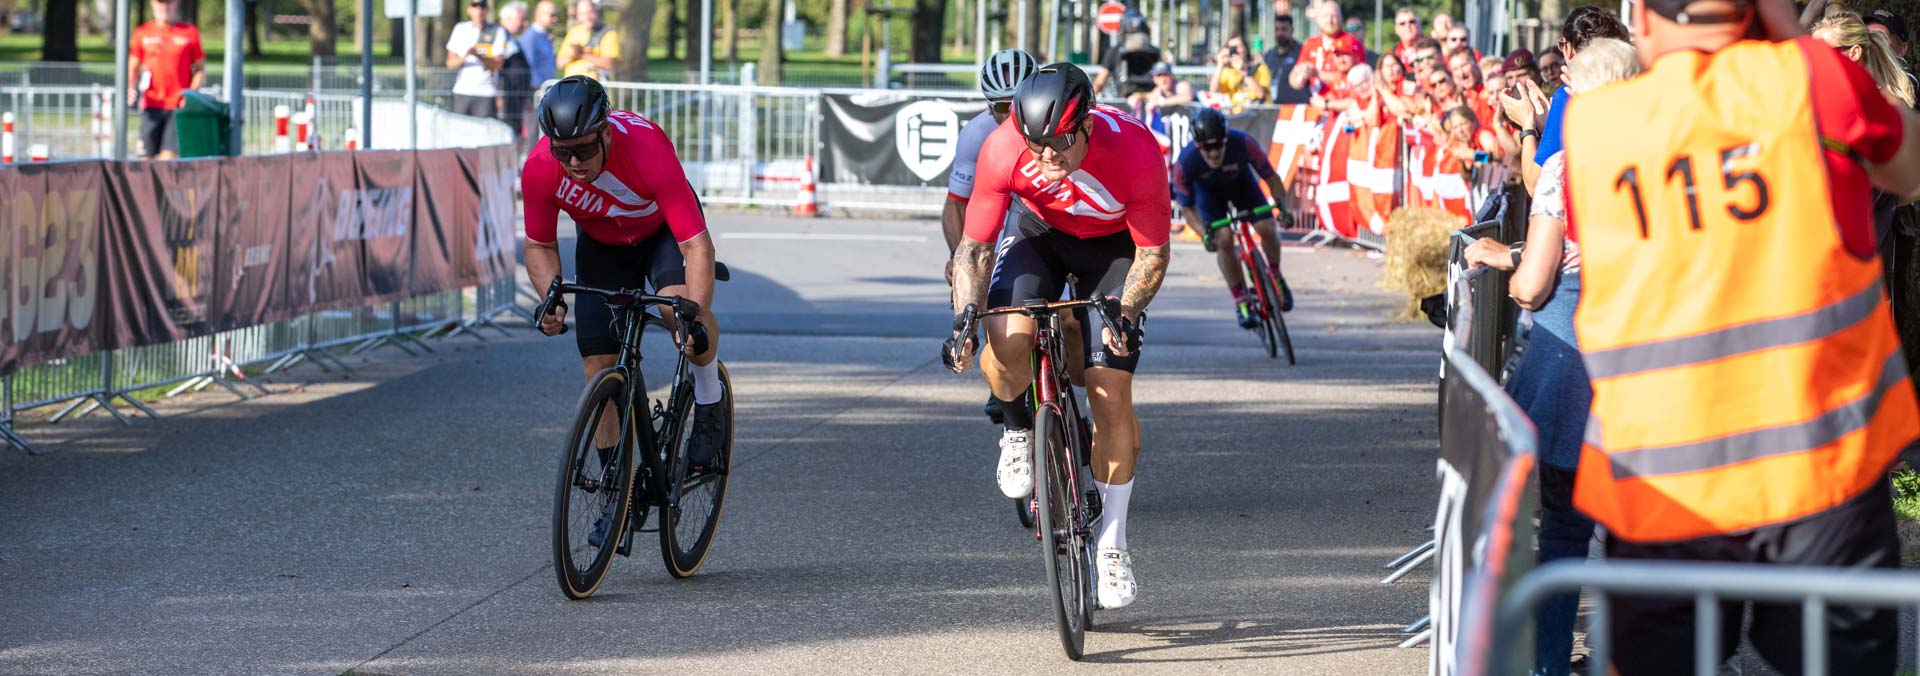 Kenneth Hyldtoft og Kasper Holm vinder cykelløb ved Invictus Games